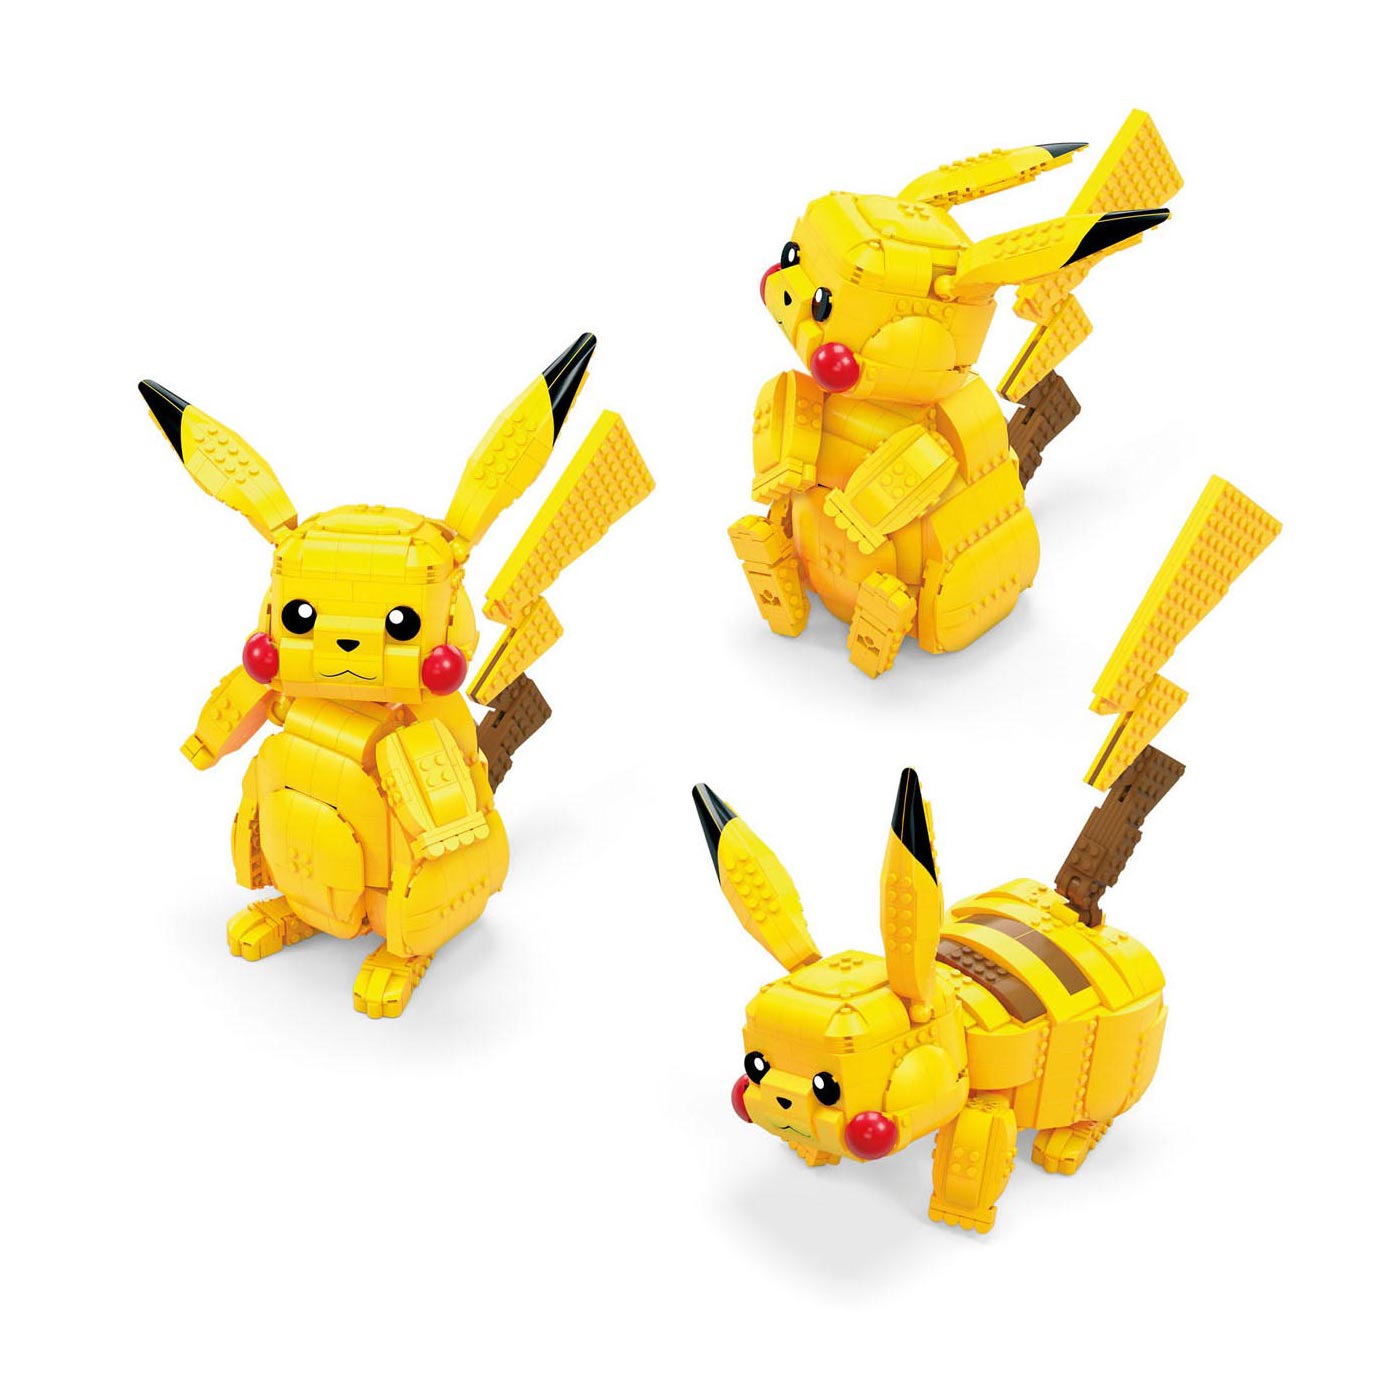 Jeu de construction Mega Construx Pokémon - Pikachu, 30 cm